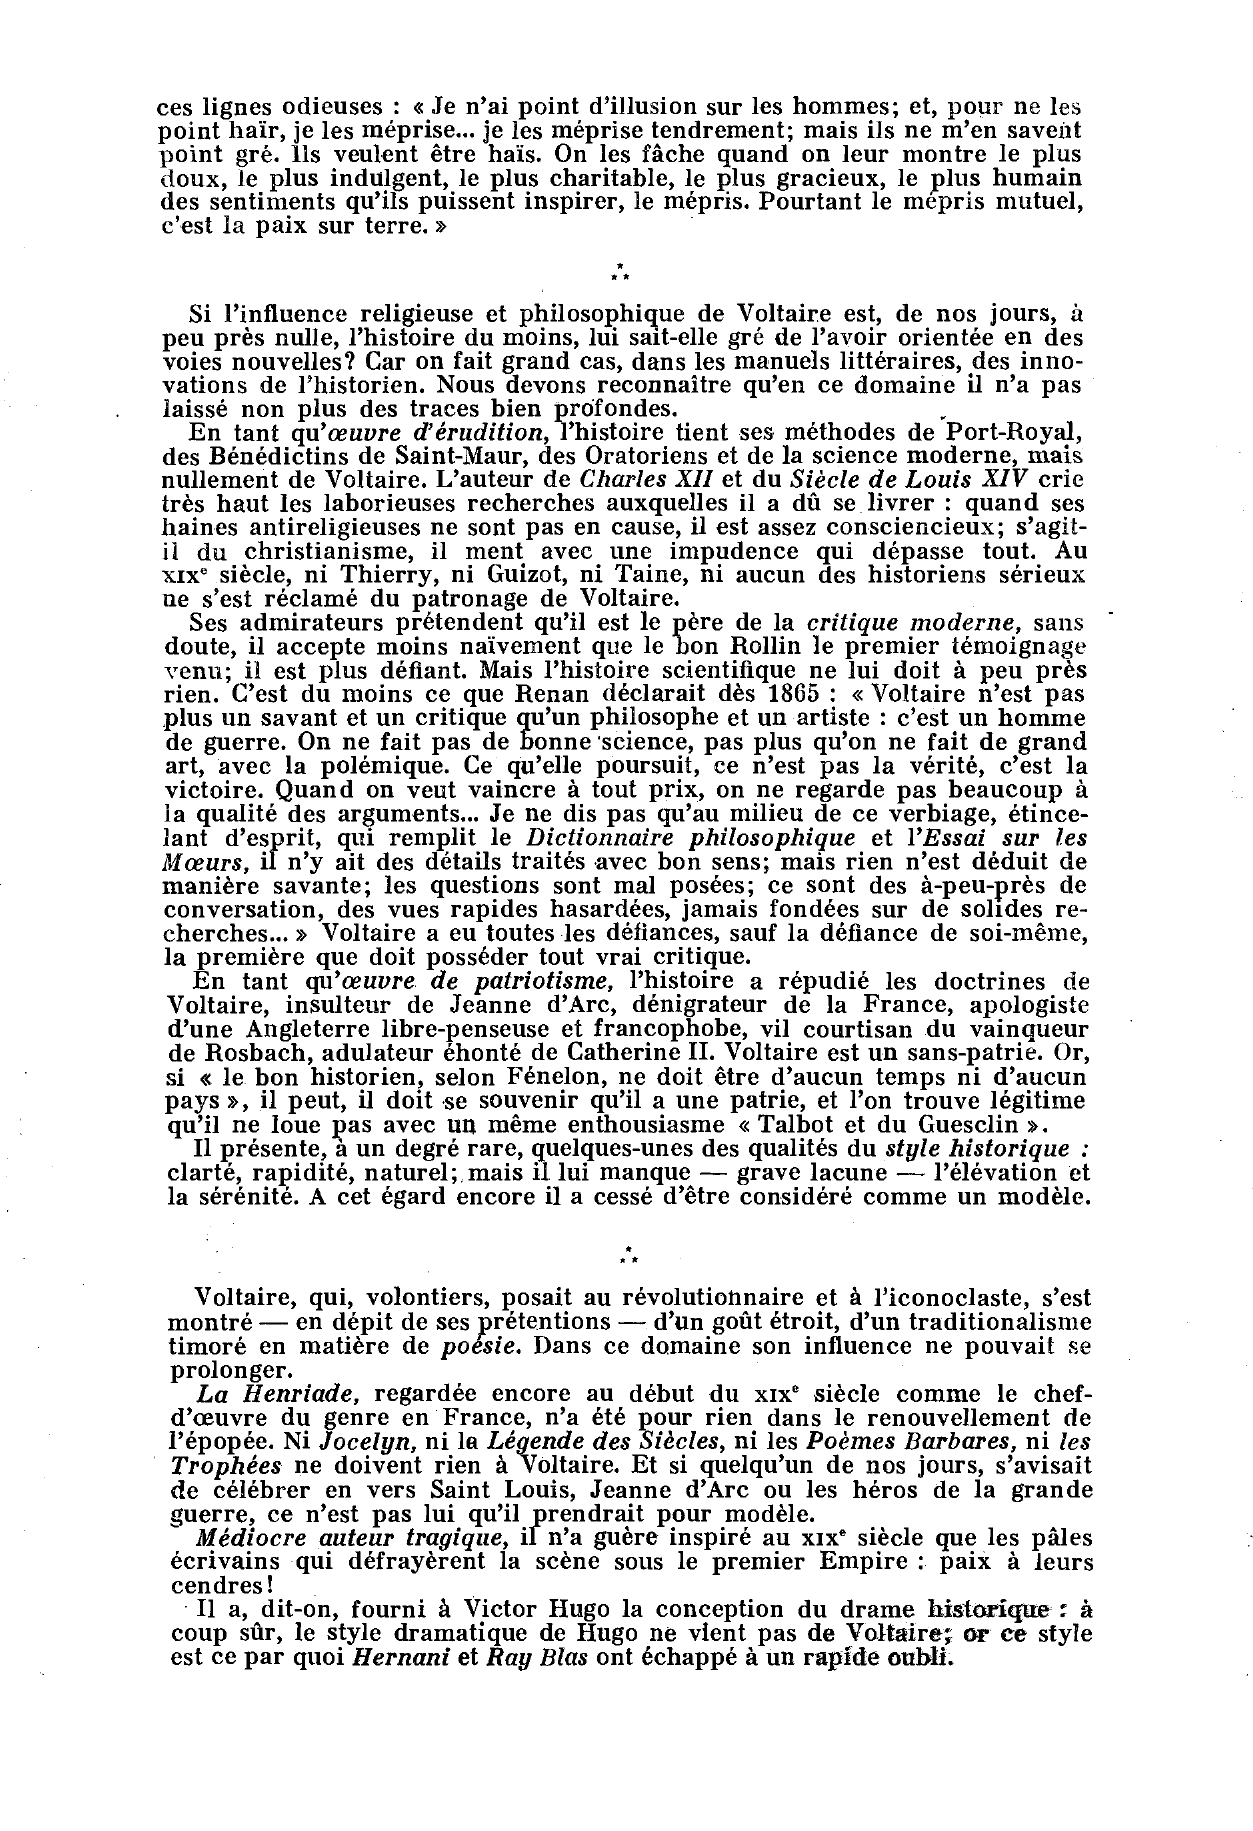 Prévisualisation du document L'influence de Voltaire. L'oeuvre de Voltaire exeree-t-elle encore quelque influence sur les lettres françaises? Est-ce heureux pour elles ?